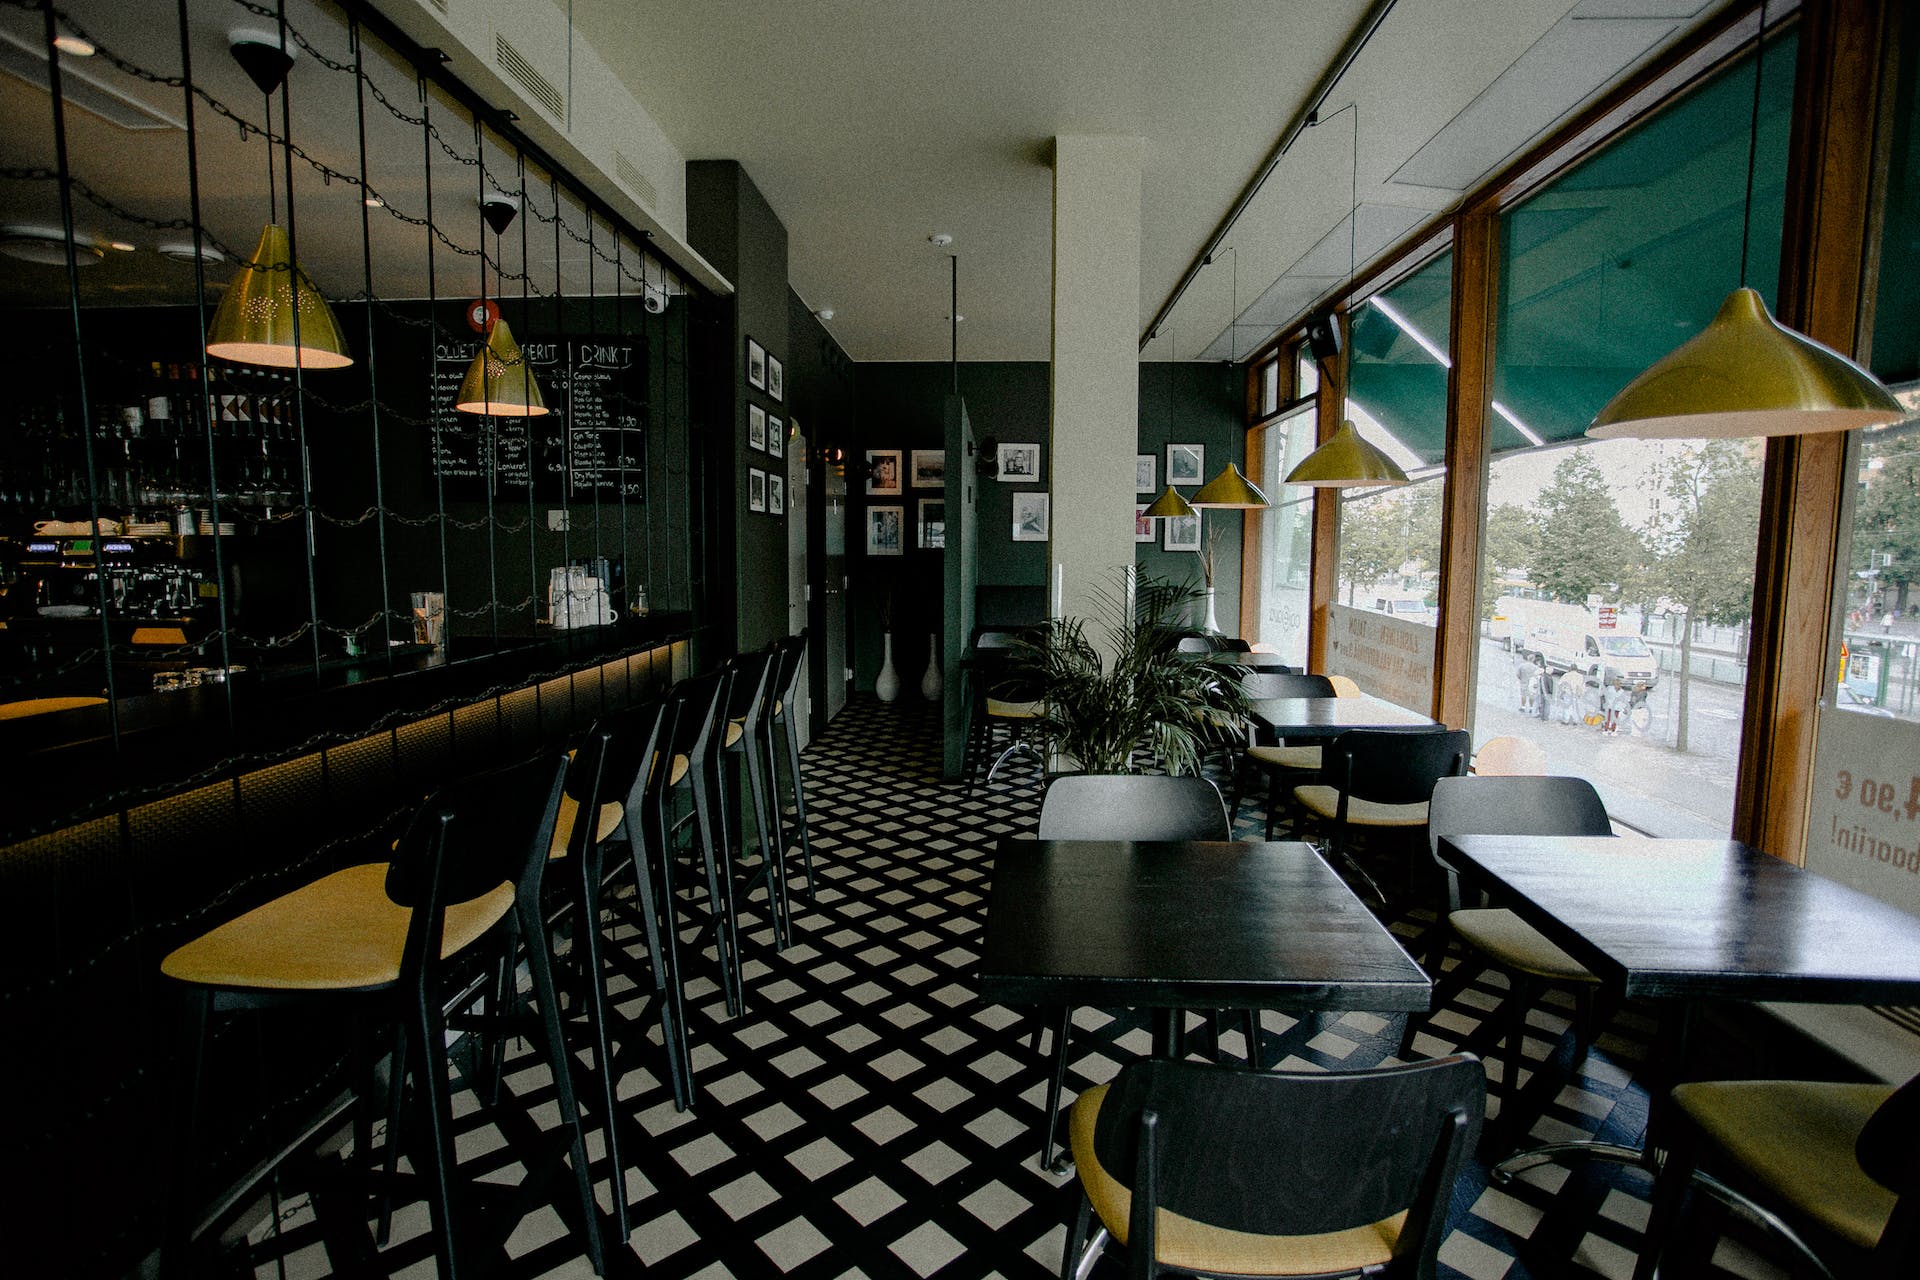 Empty diner | Source: Pexels